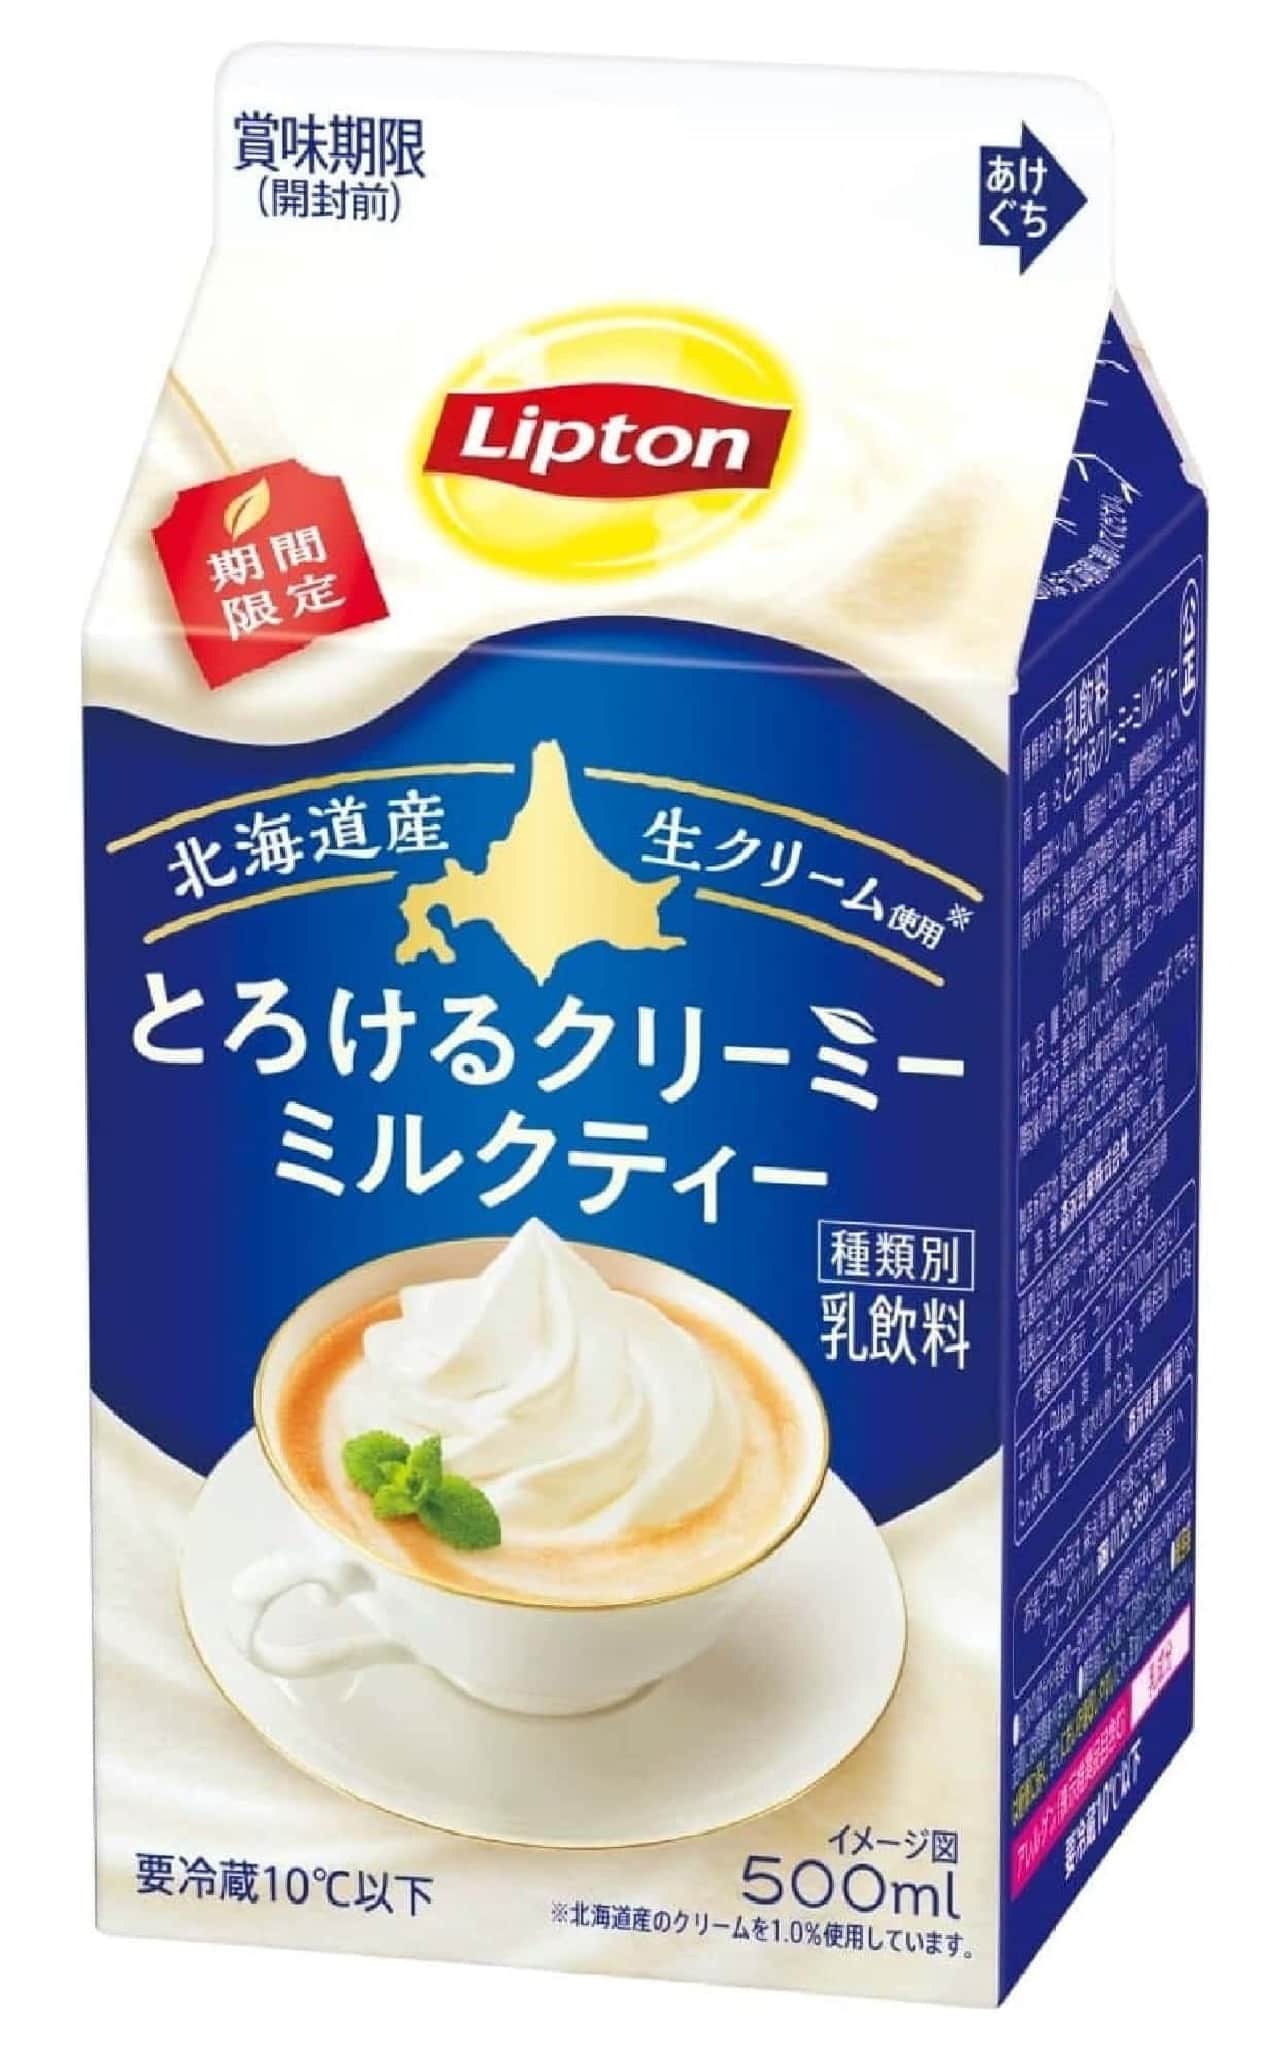 Lipton Melting Creamy Milk Tea